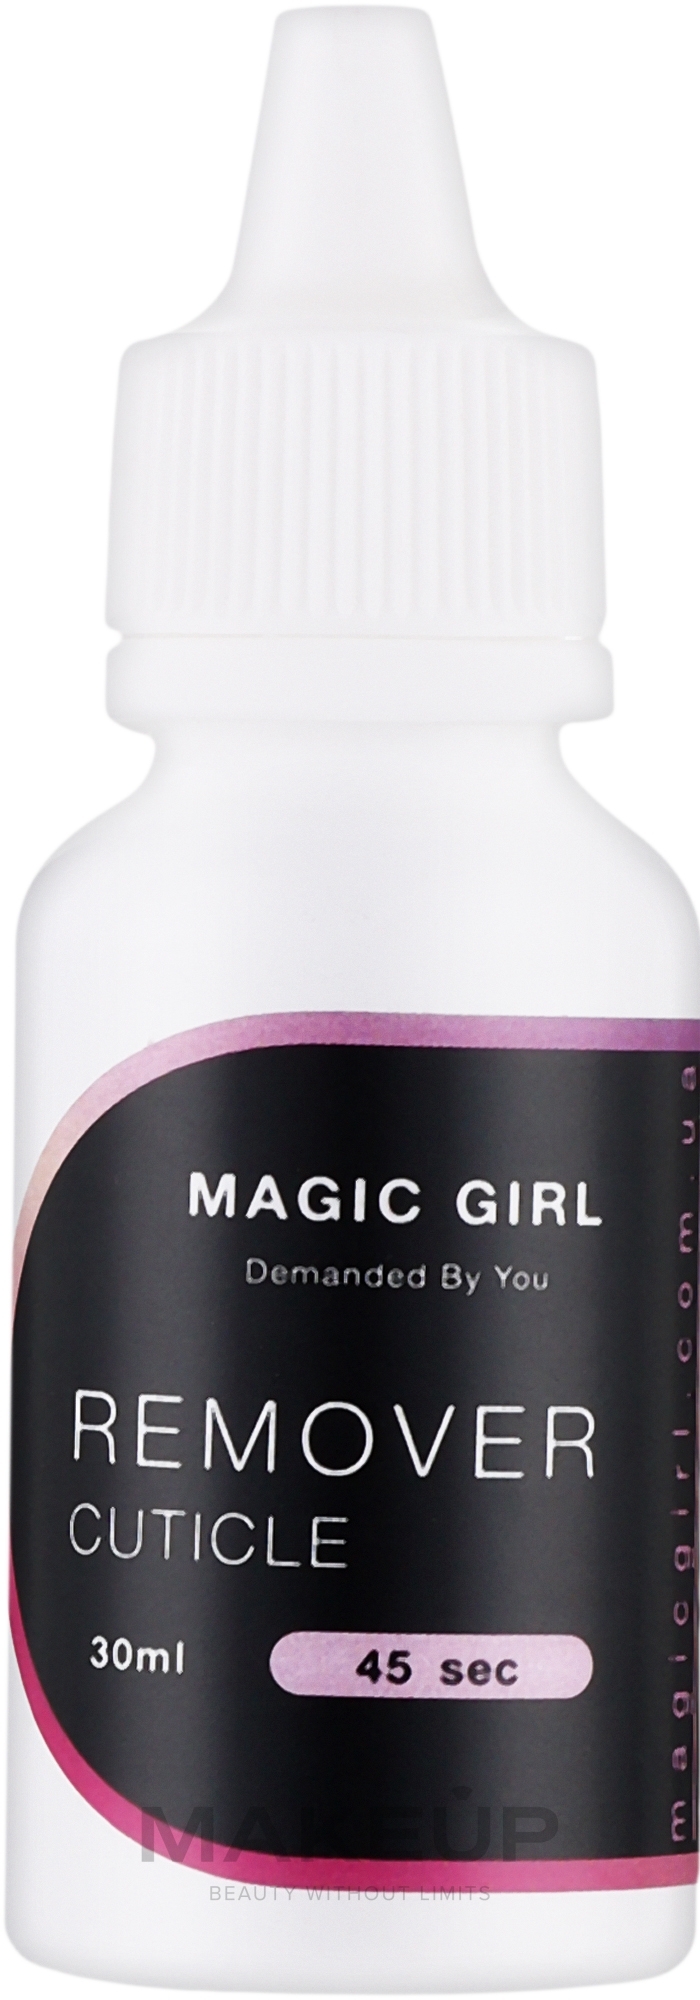 Ремувер для кутикулы - Magic Girl Cuticle Remover 45 sec — фото 30ml